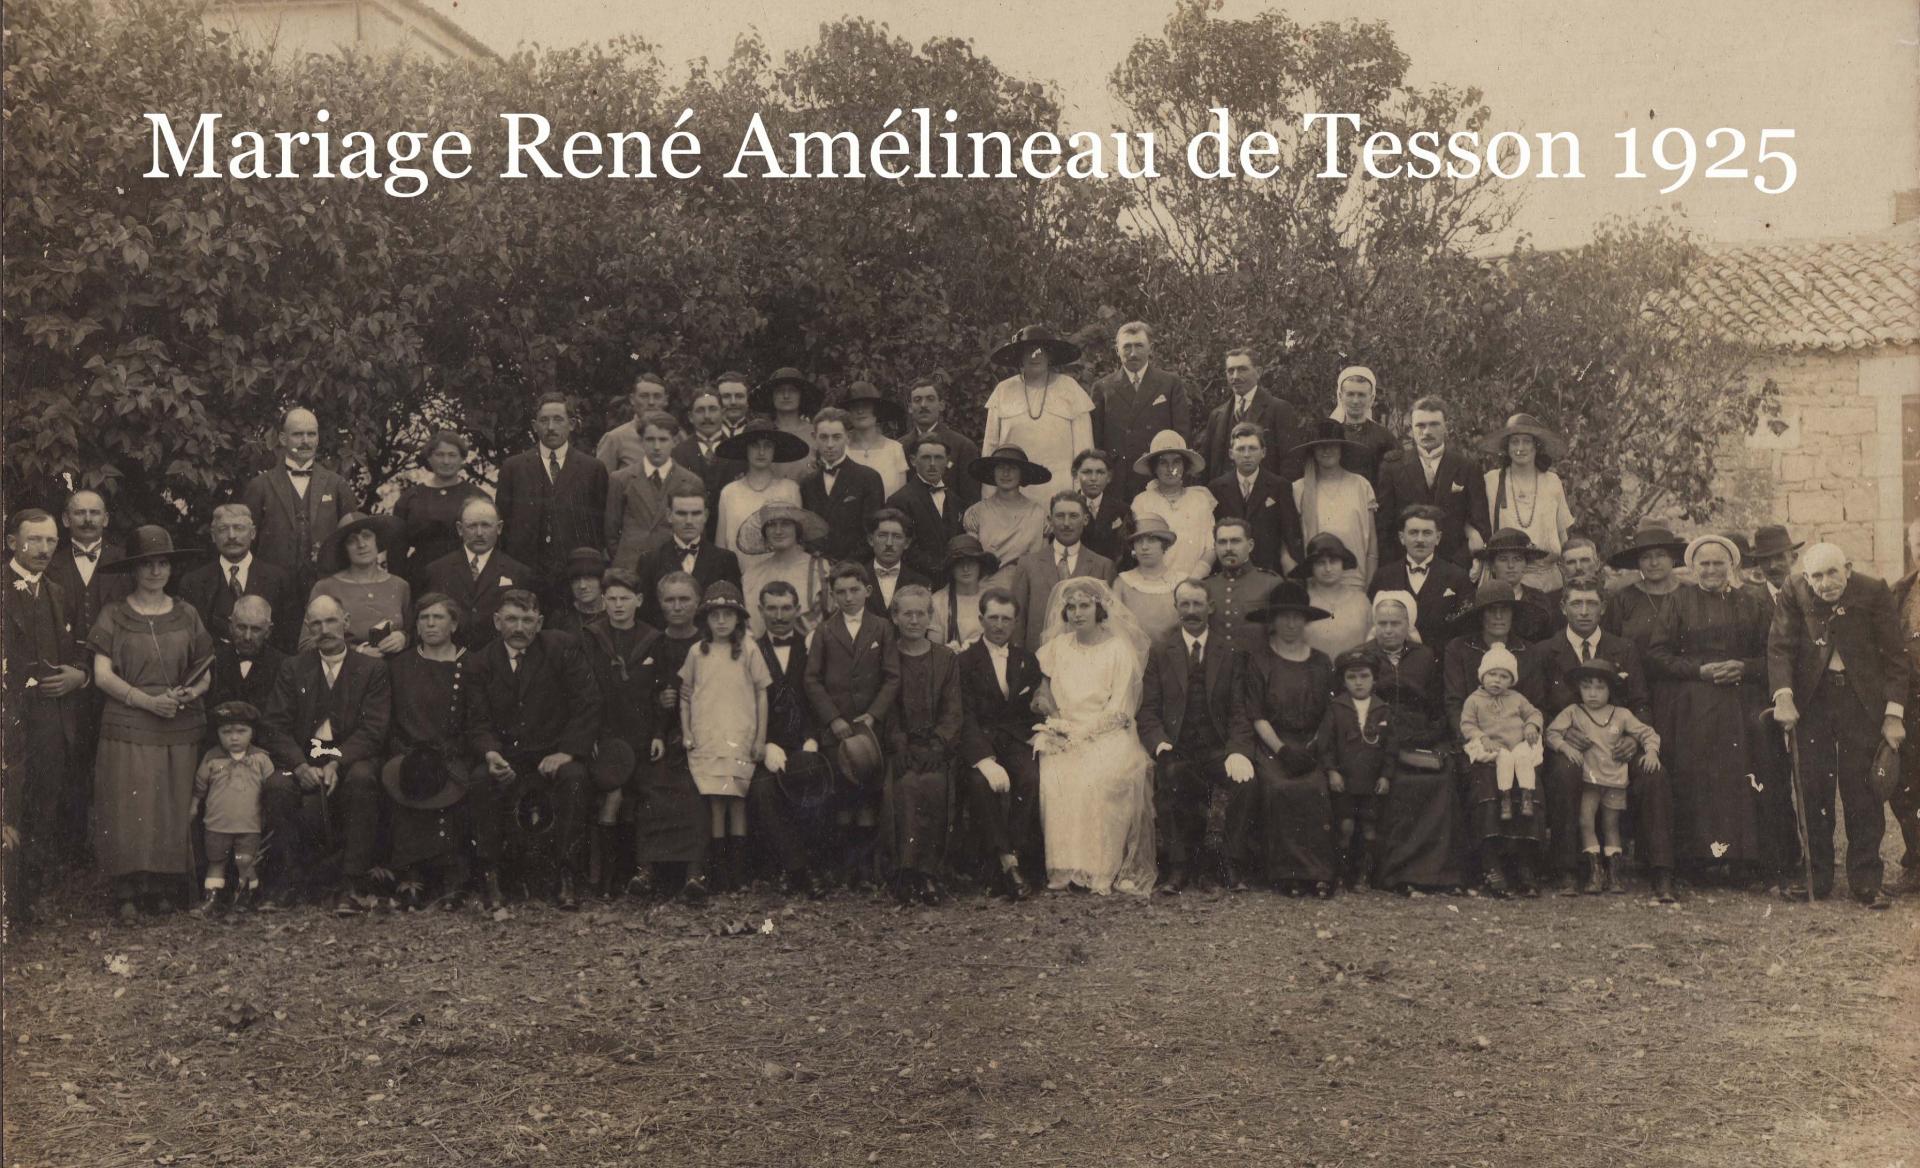 1a amelineau rene mariage 1925 tesson titre copie